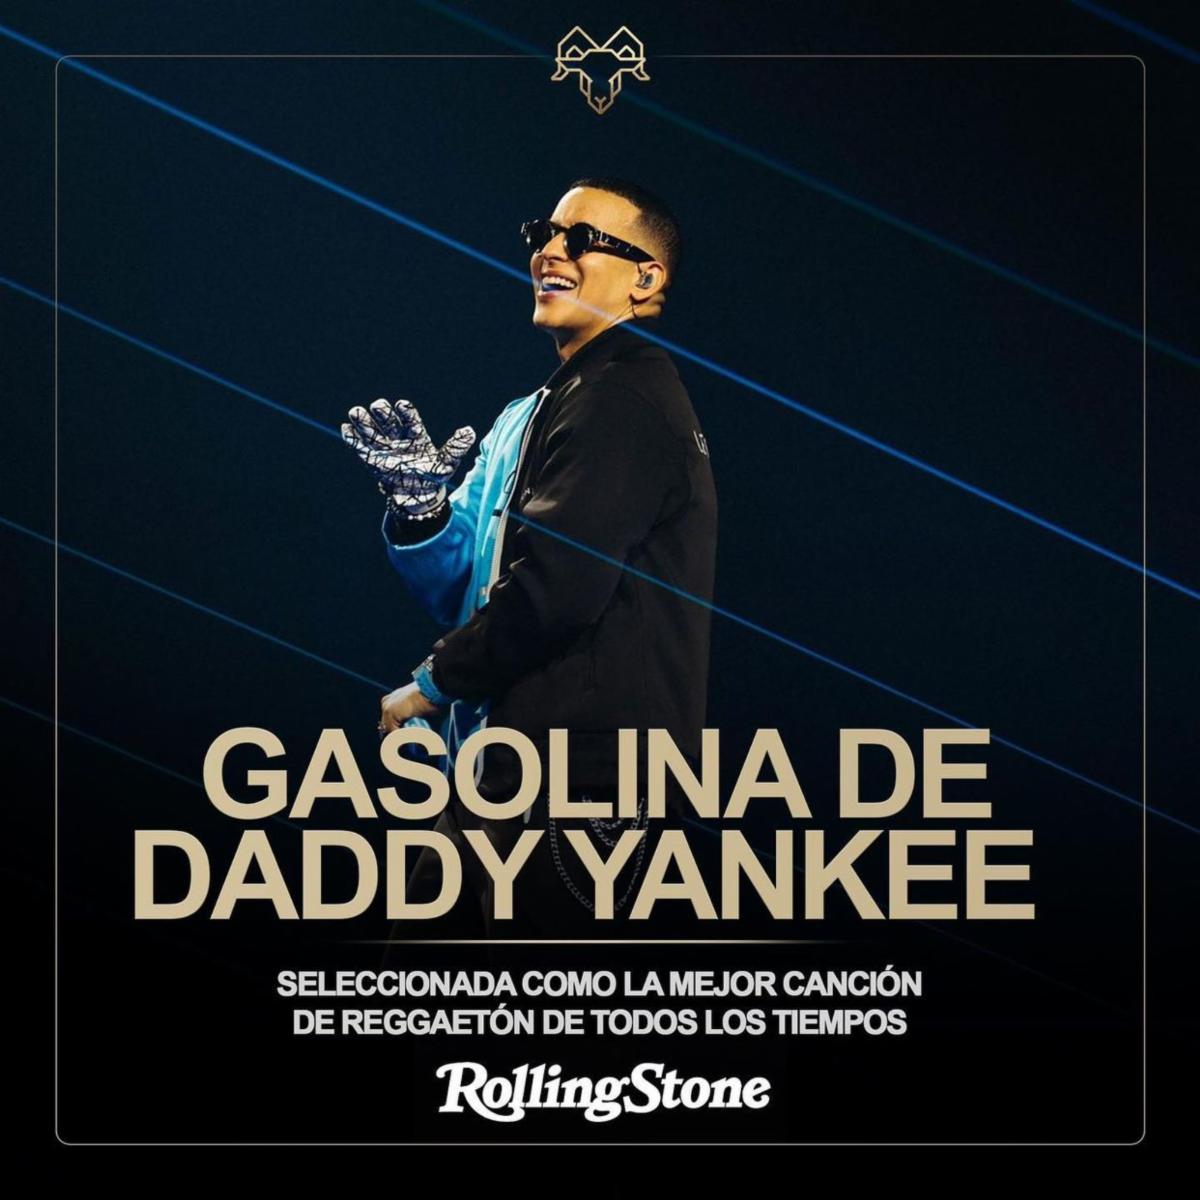 DADDY YANKEE se gana otro reconocimiento mundial por la canción “Gasolina”